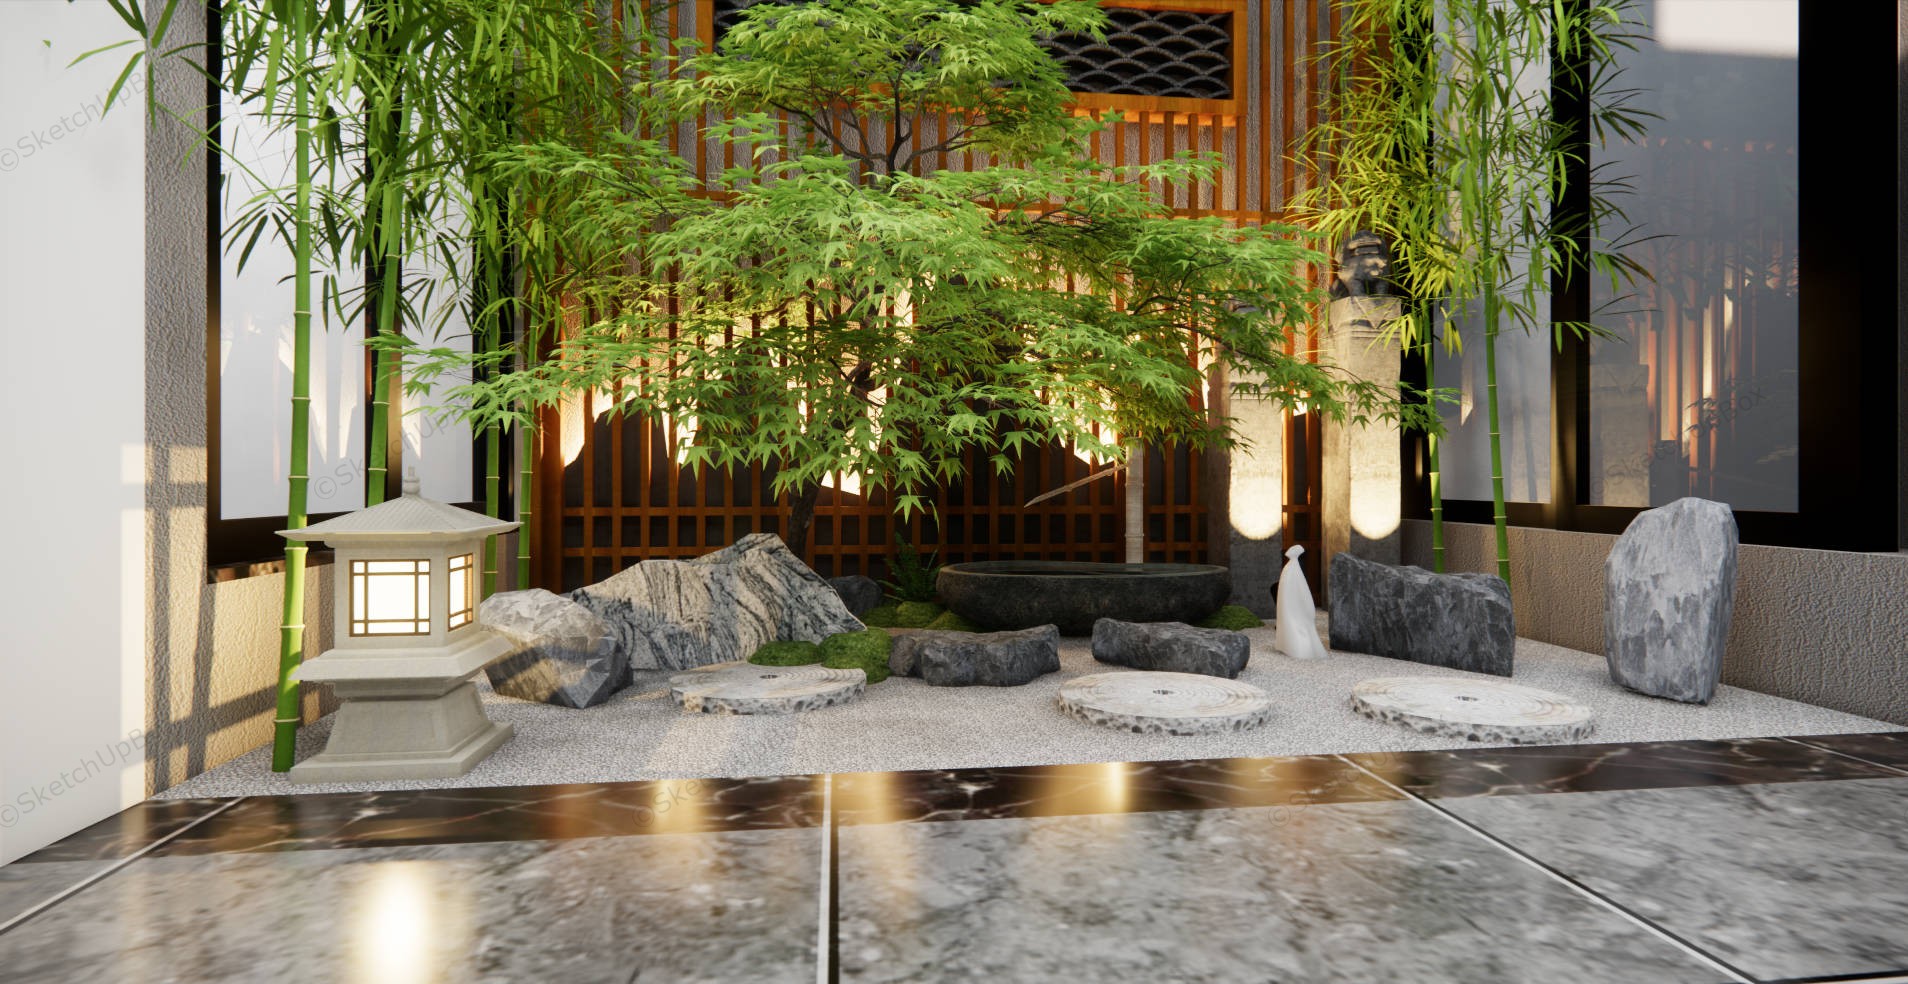 Indoor Zen Garden Ideas sketchup model preview - SketchupBox